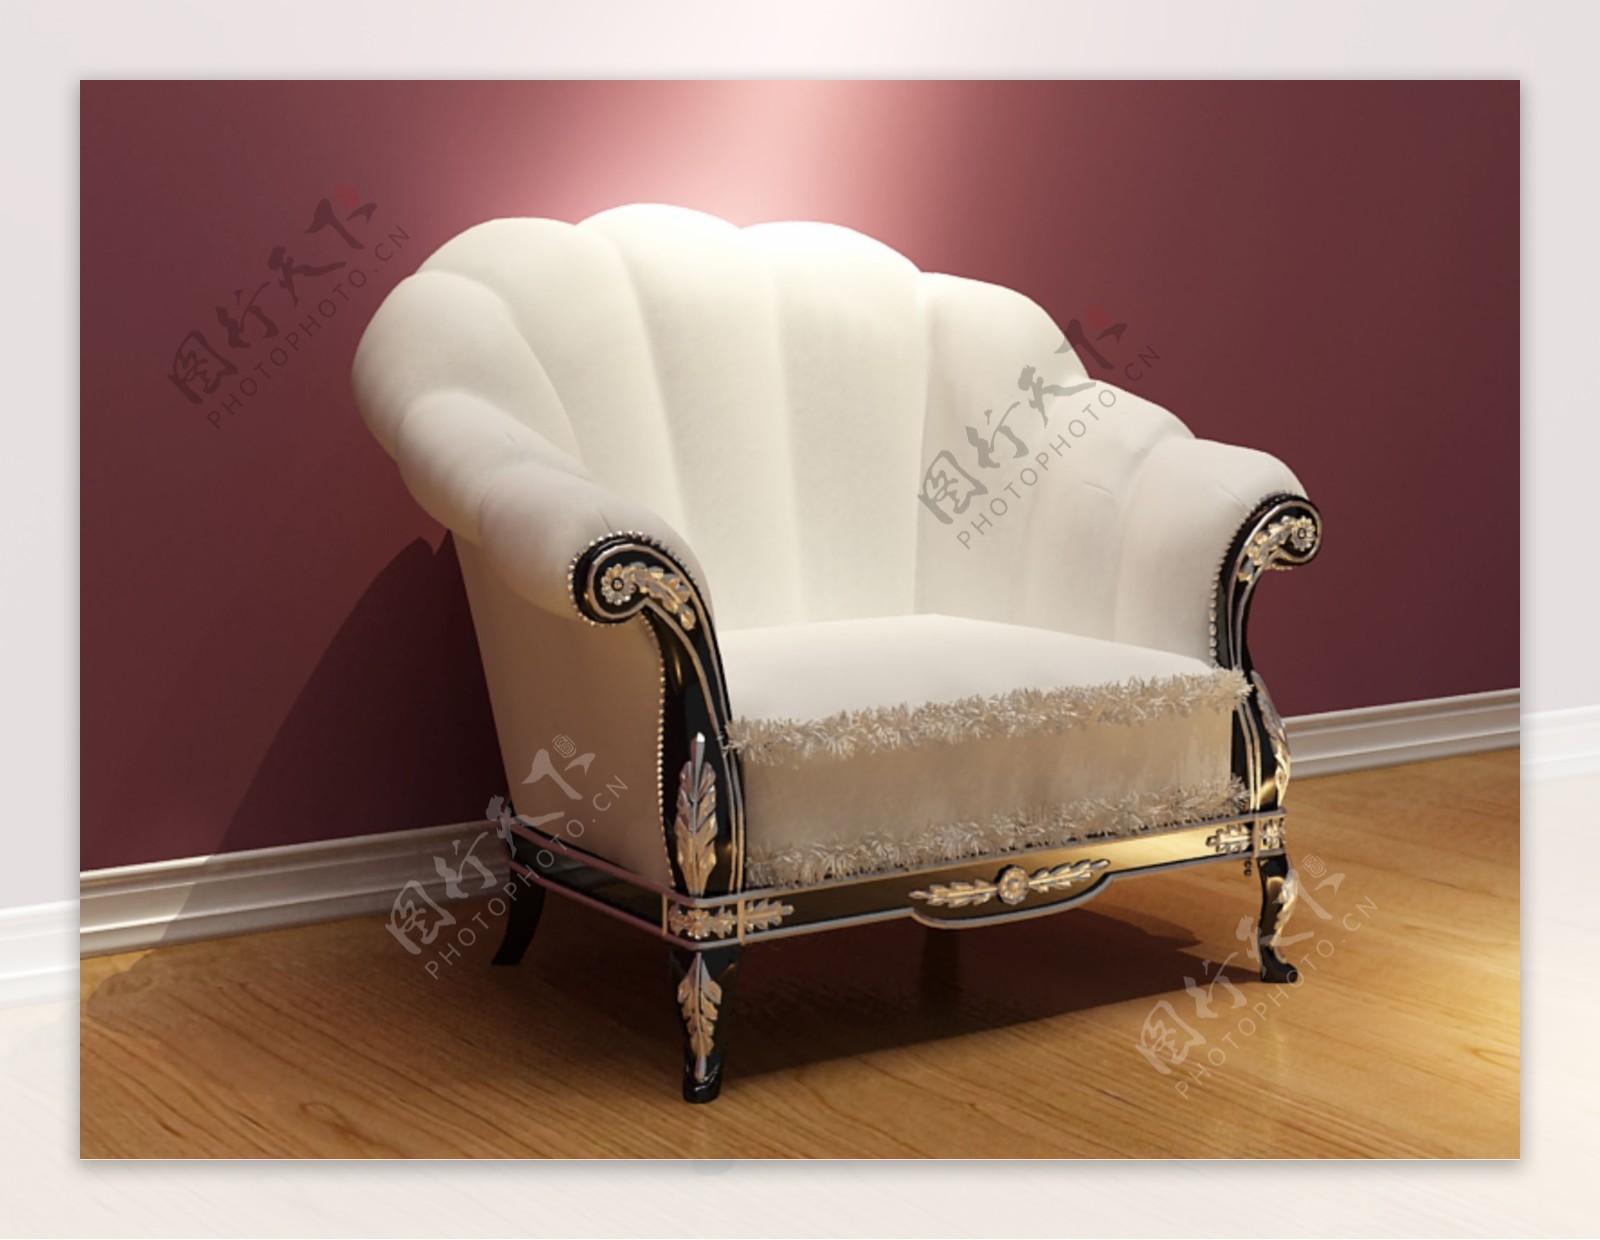 欧洲风格的精品白沙发椅欧式家具